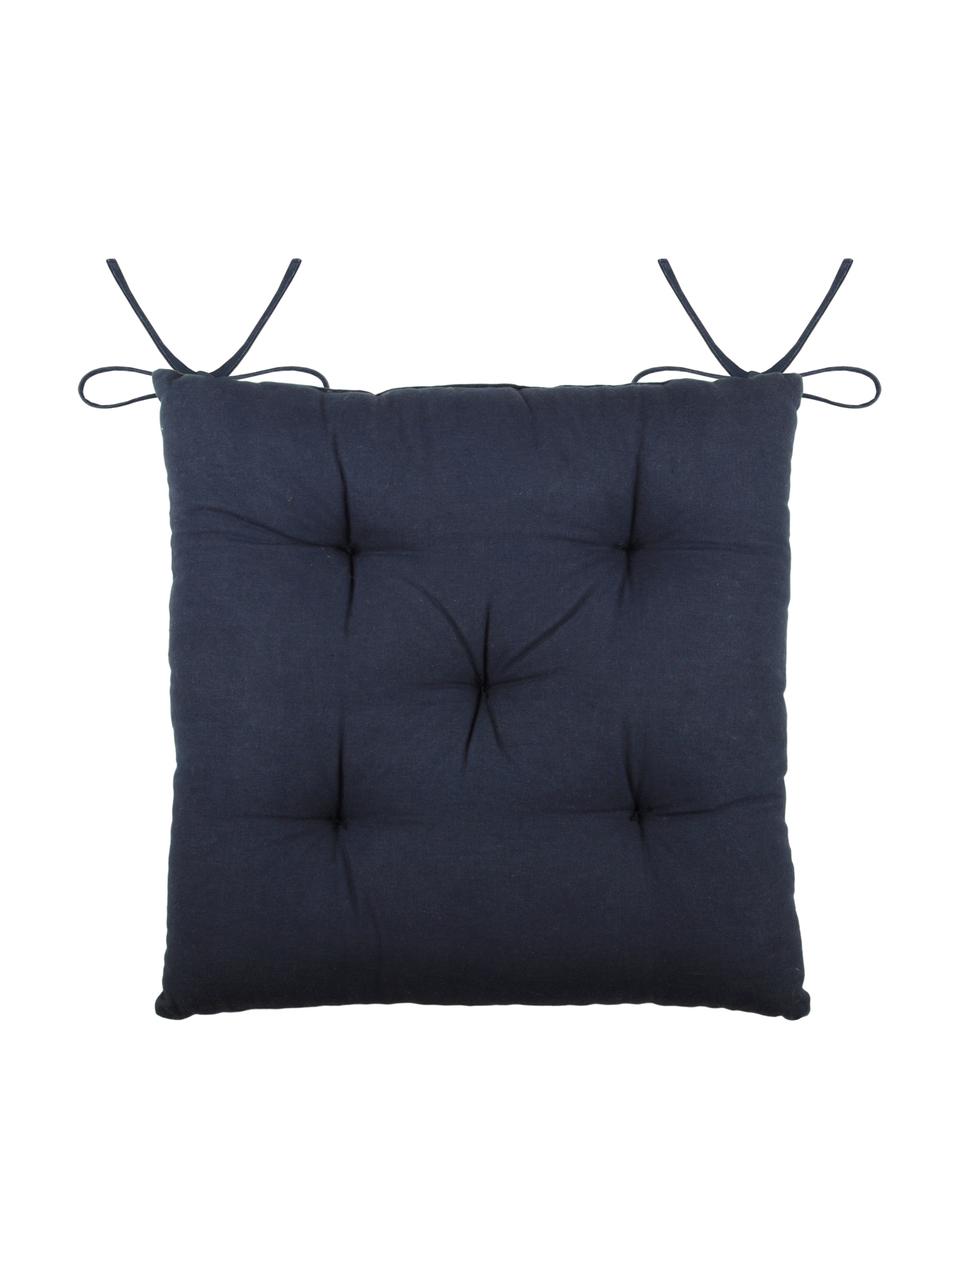 Sitzauflage Concarneau mit erhabenem Muster, 100% Baumwolle, Dunkelblau, 40 x 40 cm